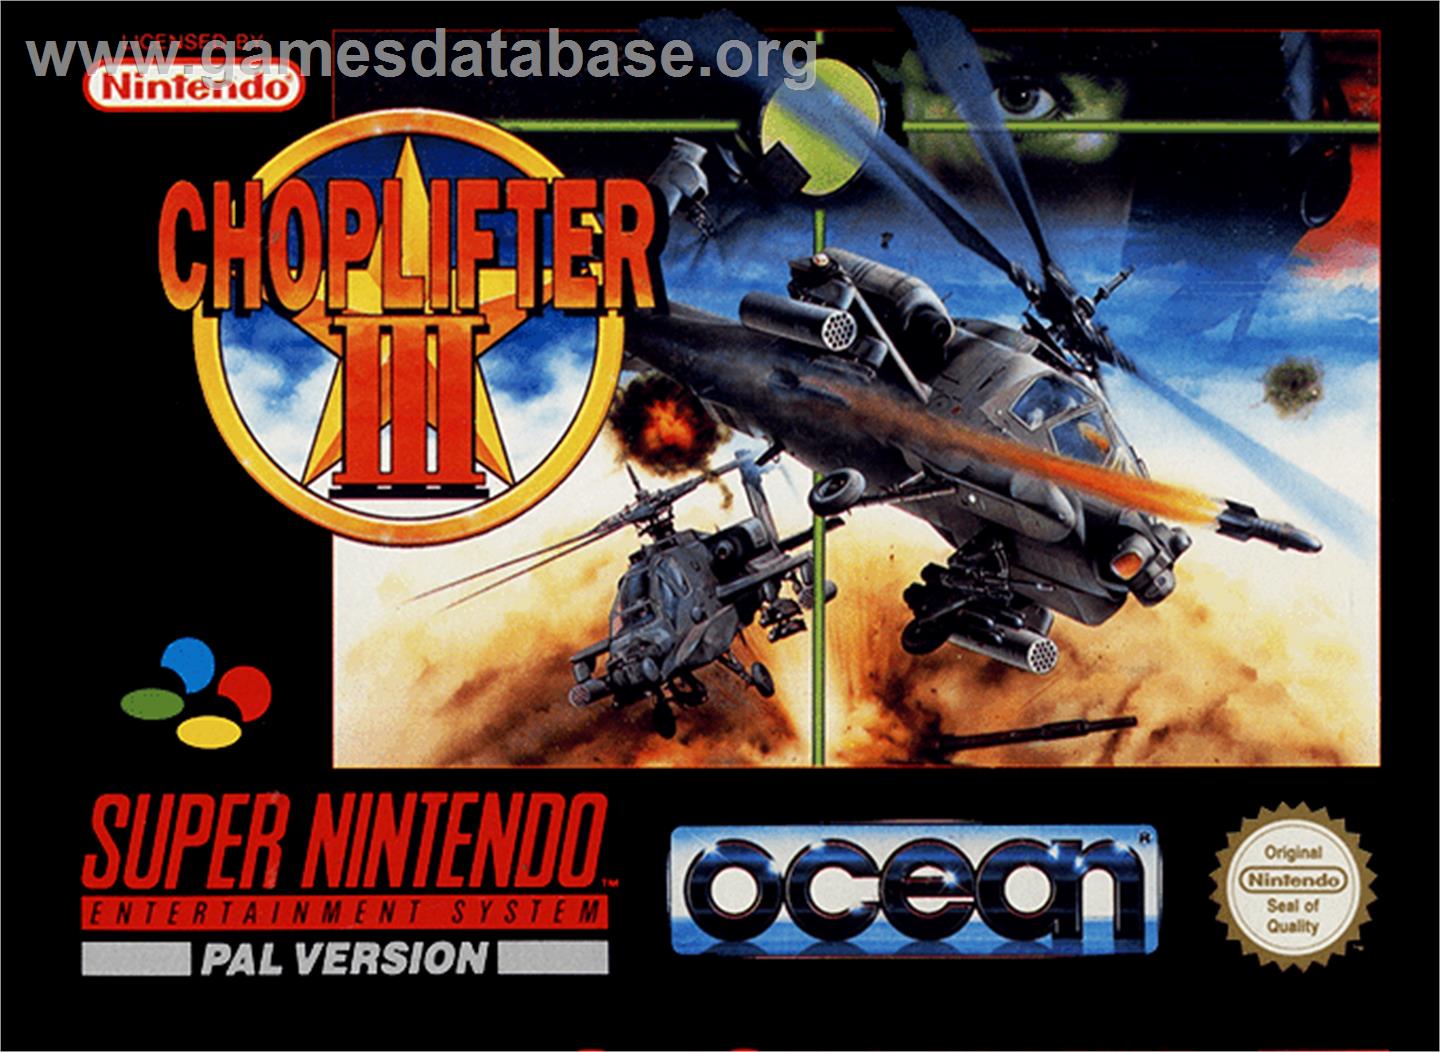 Choplifter III: Rescue Survive - Nintendo SNES - Artwork - Box